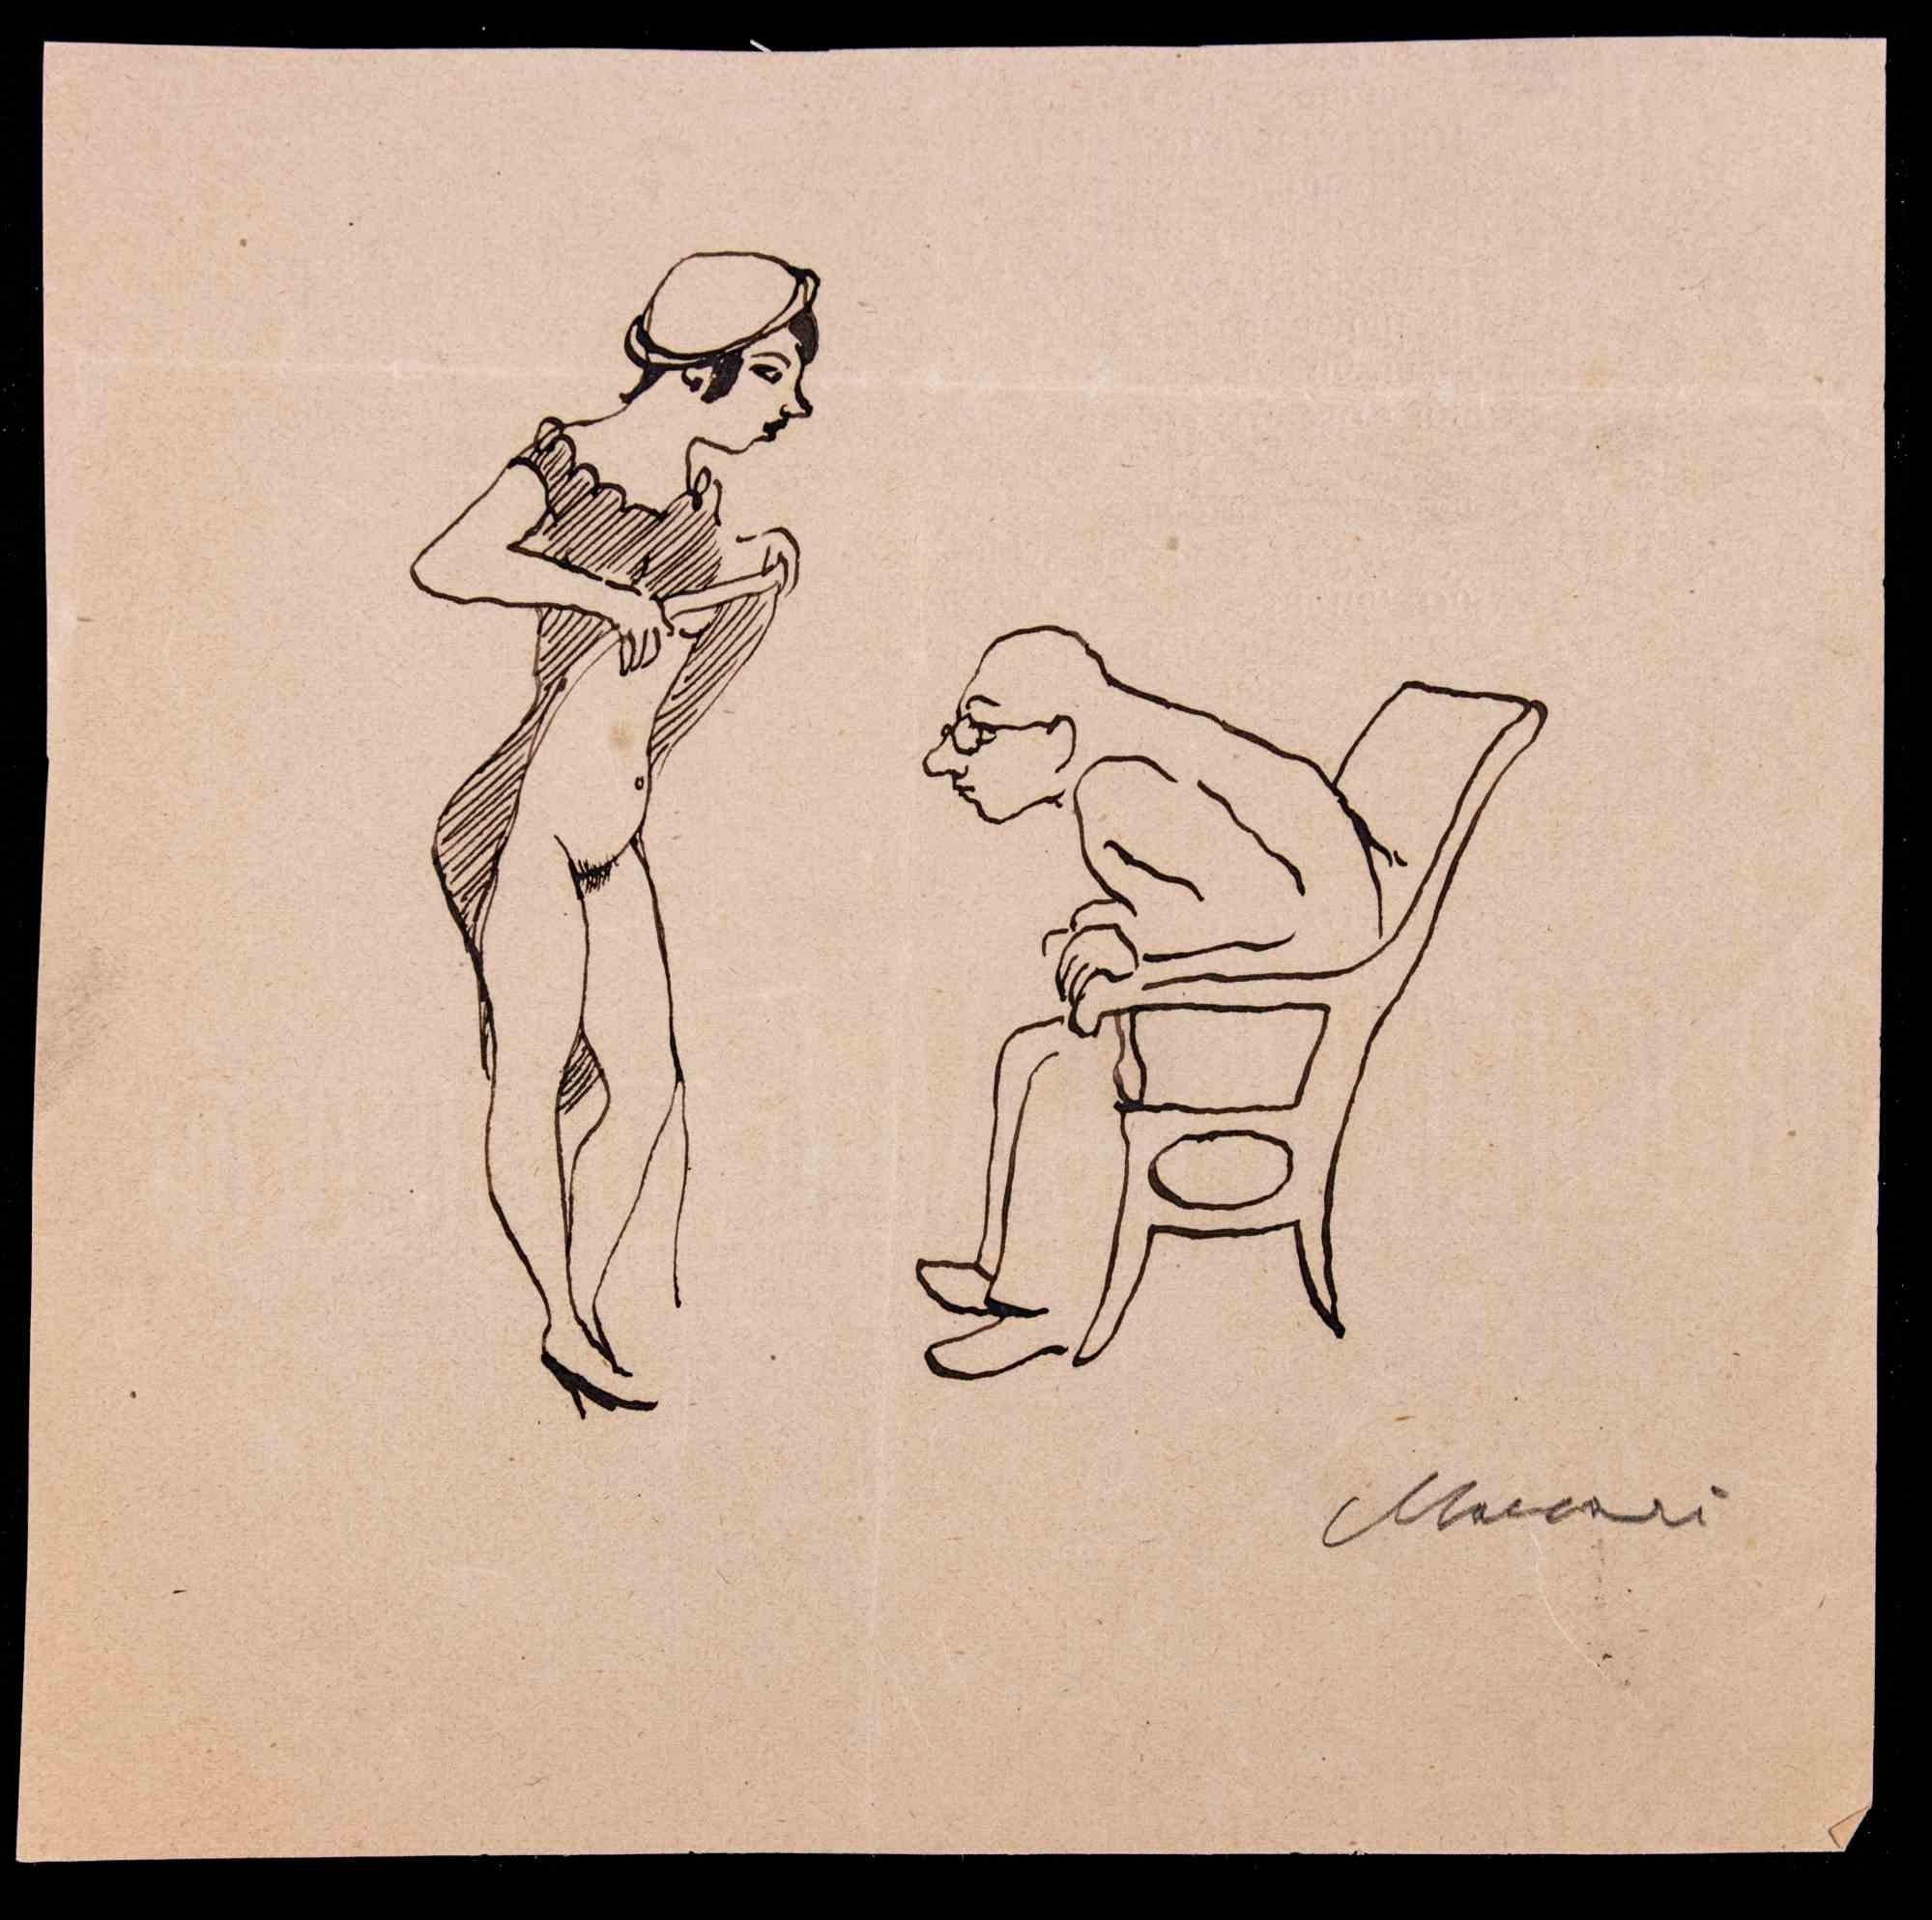 Scholar est un dessin à l'encre de Chine réalisé par Mino Maccari (1924-1989) dans les années 1940.

Signé à la main dans la marge inférieure.

Bon état sur un papier un peu jauni.

Mino Maccari (Sienne, 1924-Rome, 16 juin 1989) est un écrivain,